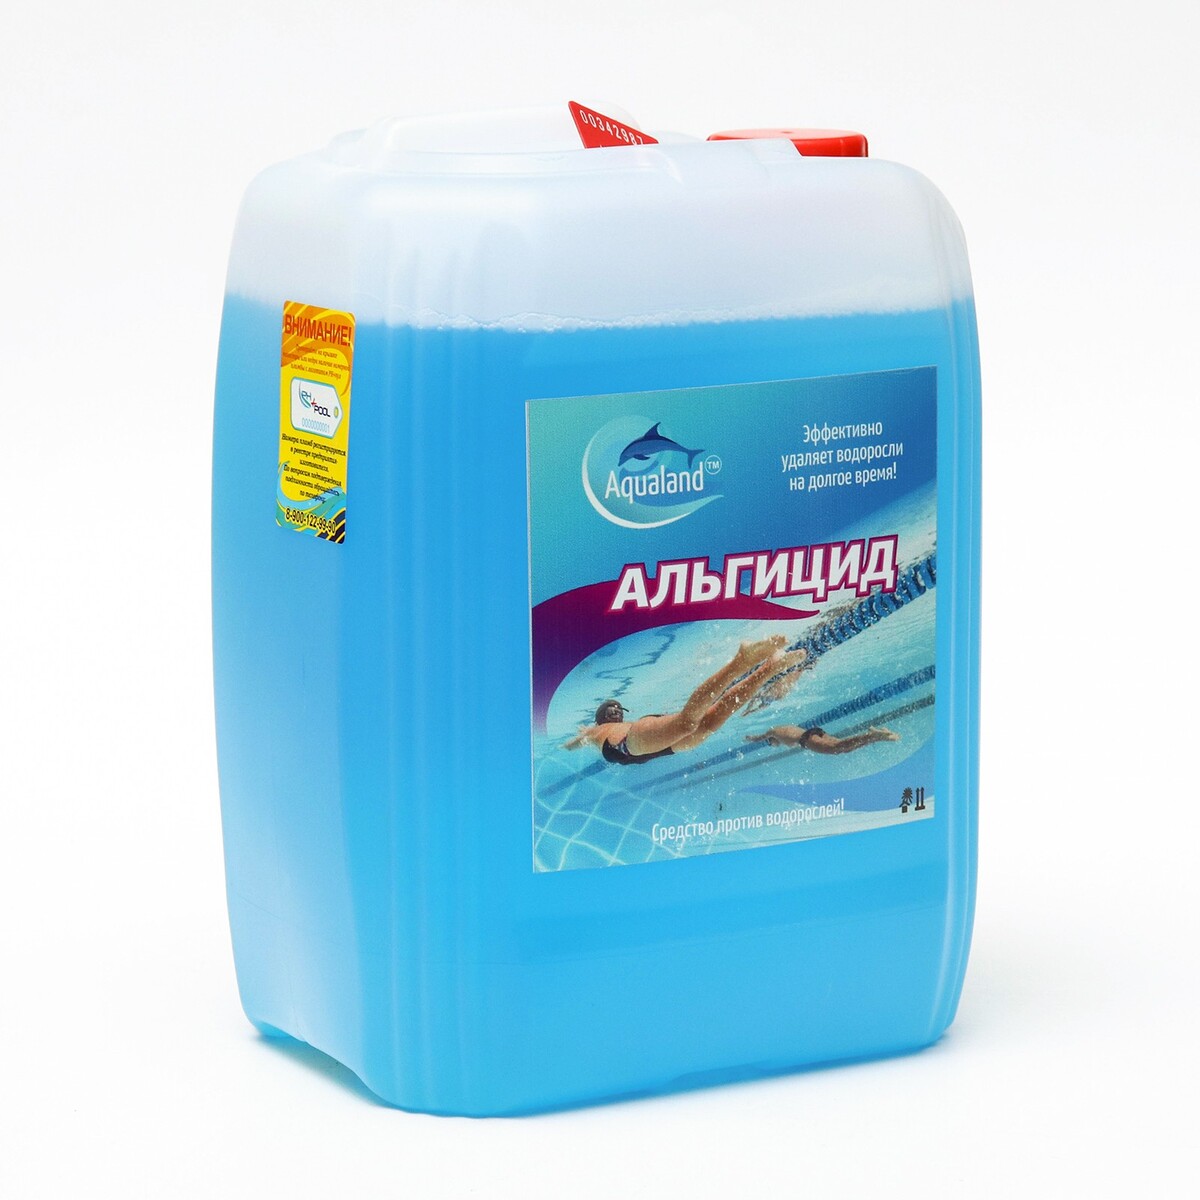 Средство против водорослей aqualand, альгицид, 5 л дезинфицирующие средство aqualand хлор 60 гранулы 1 кг